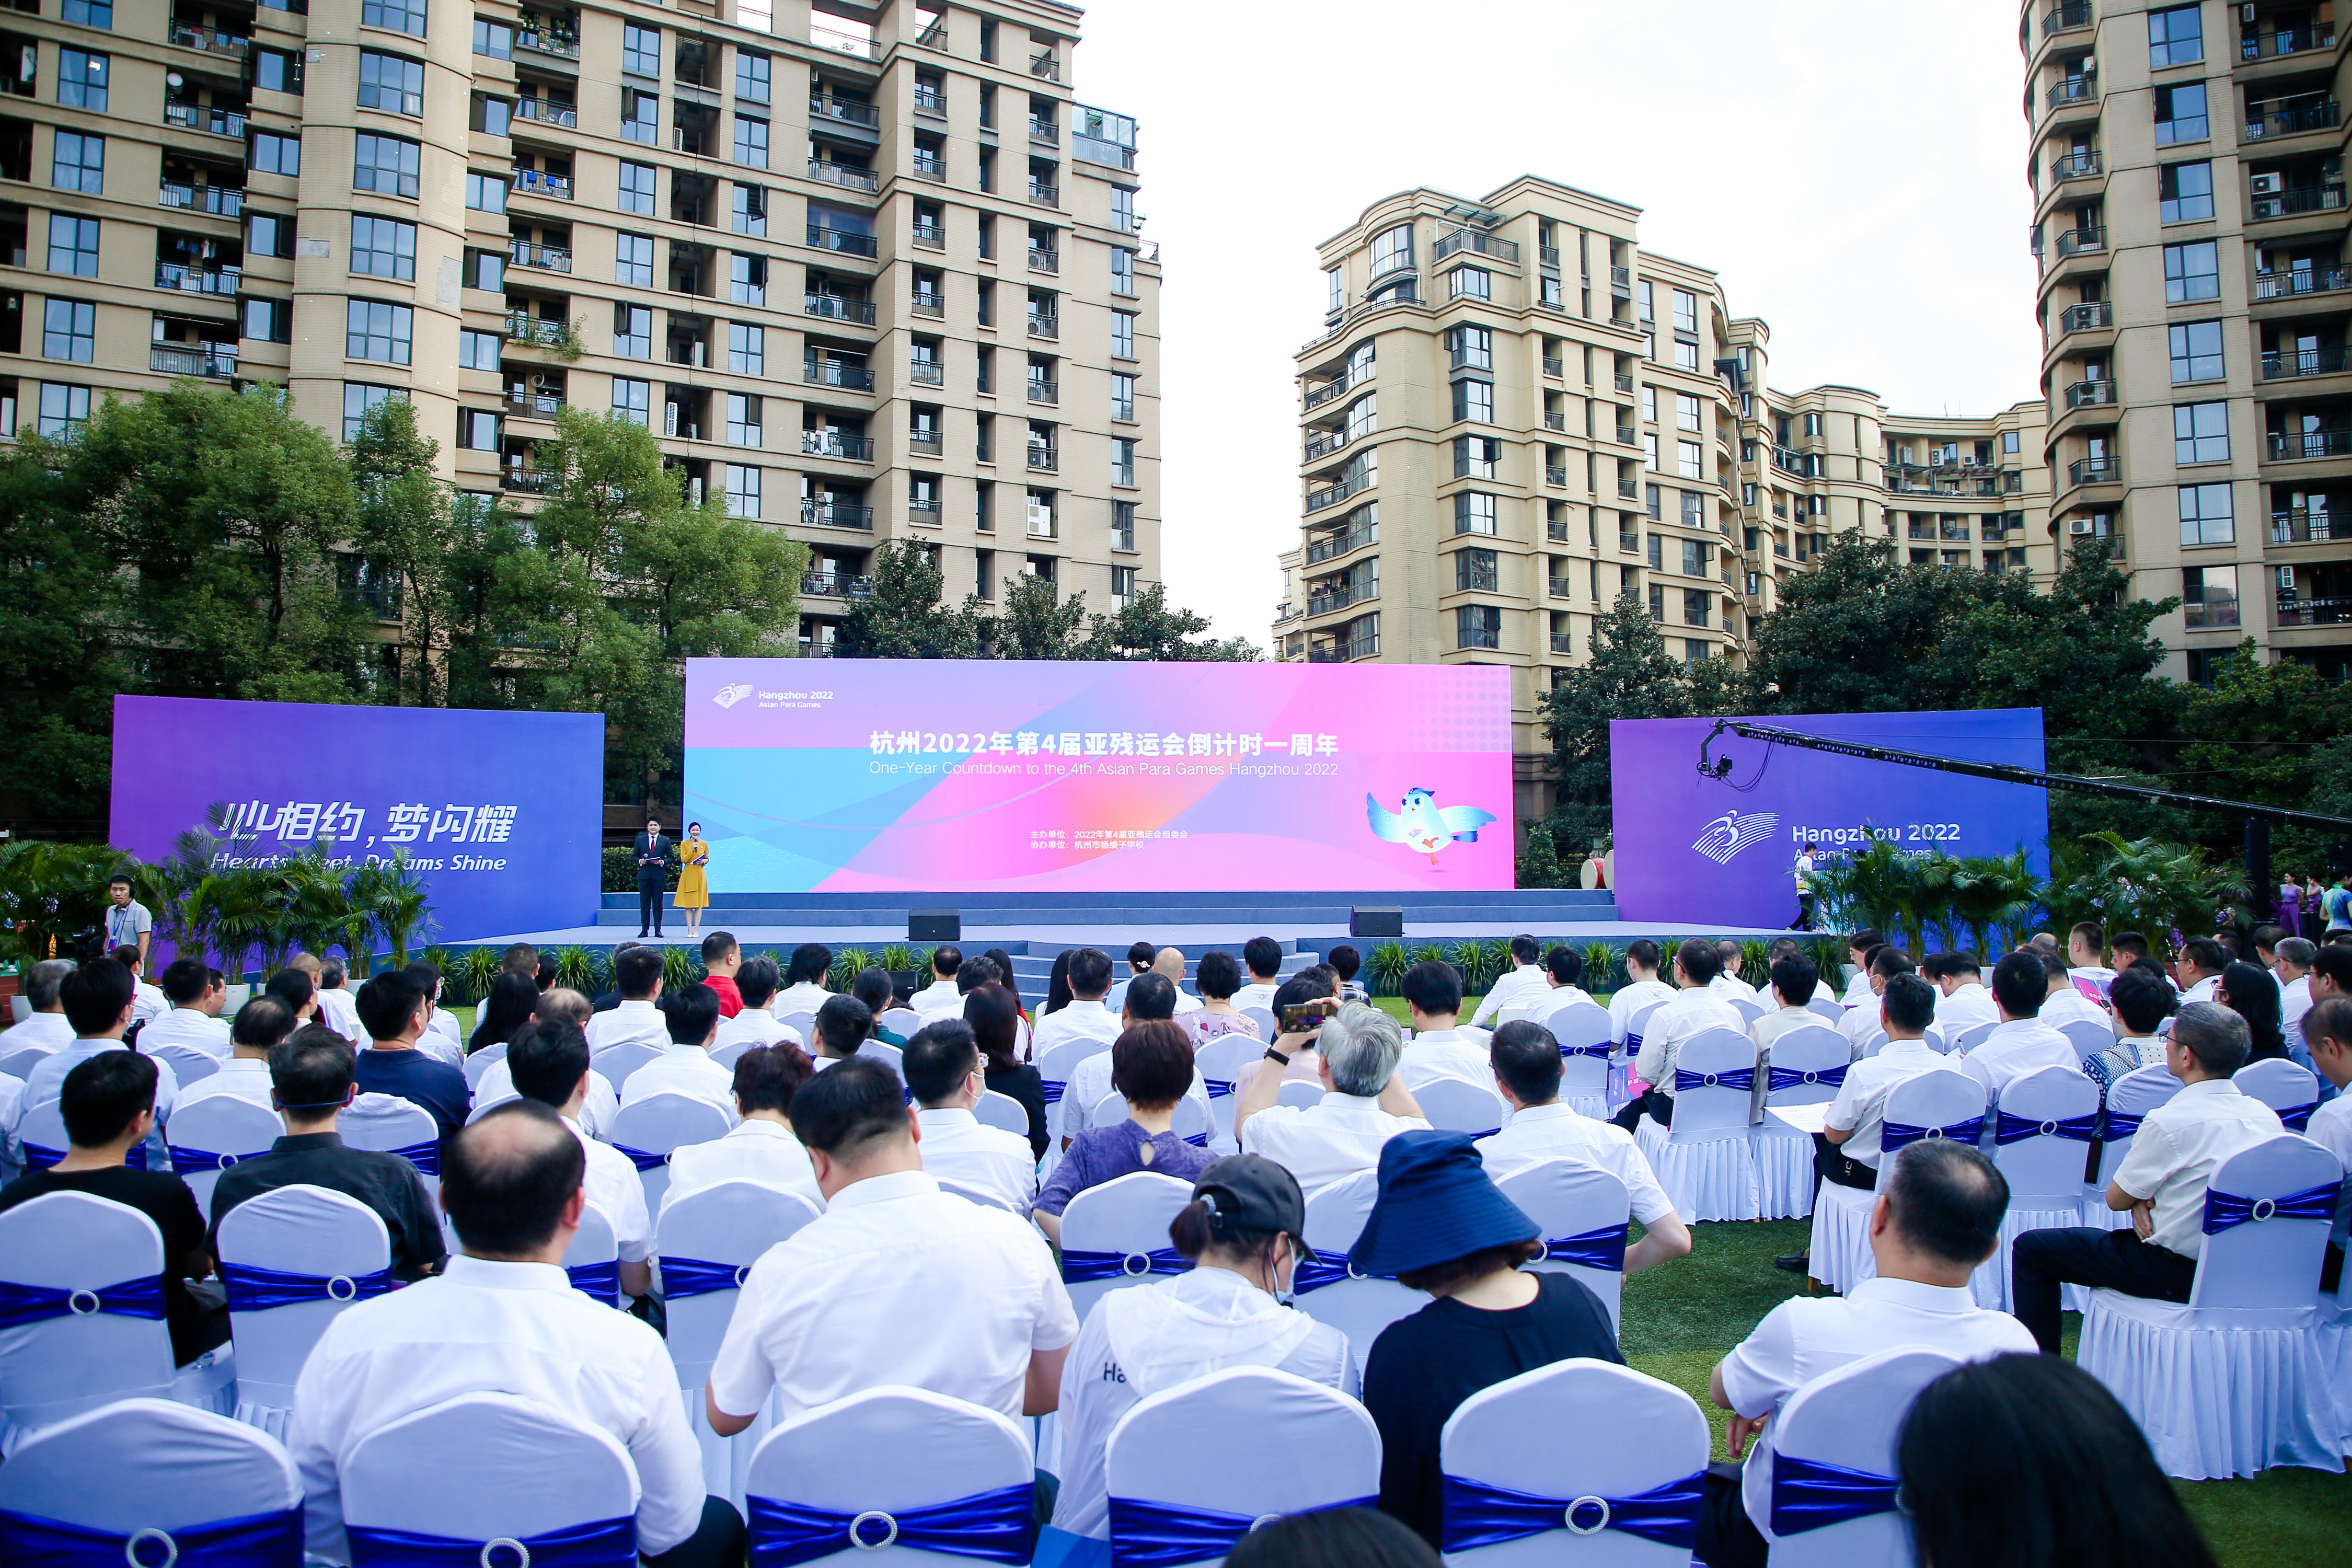 杭州2022年第4届亚残运会倒计时一周年主题活动现场 杭州亚组委供图